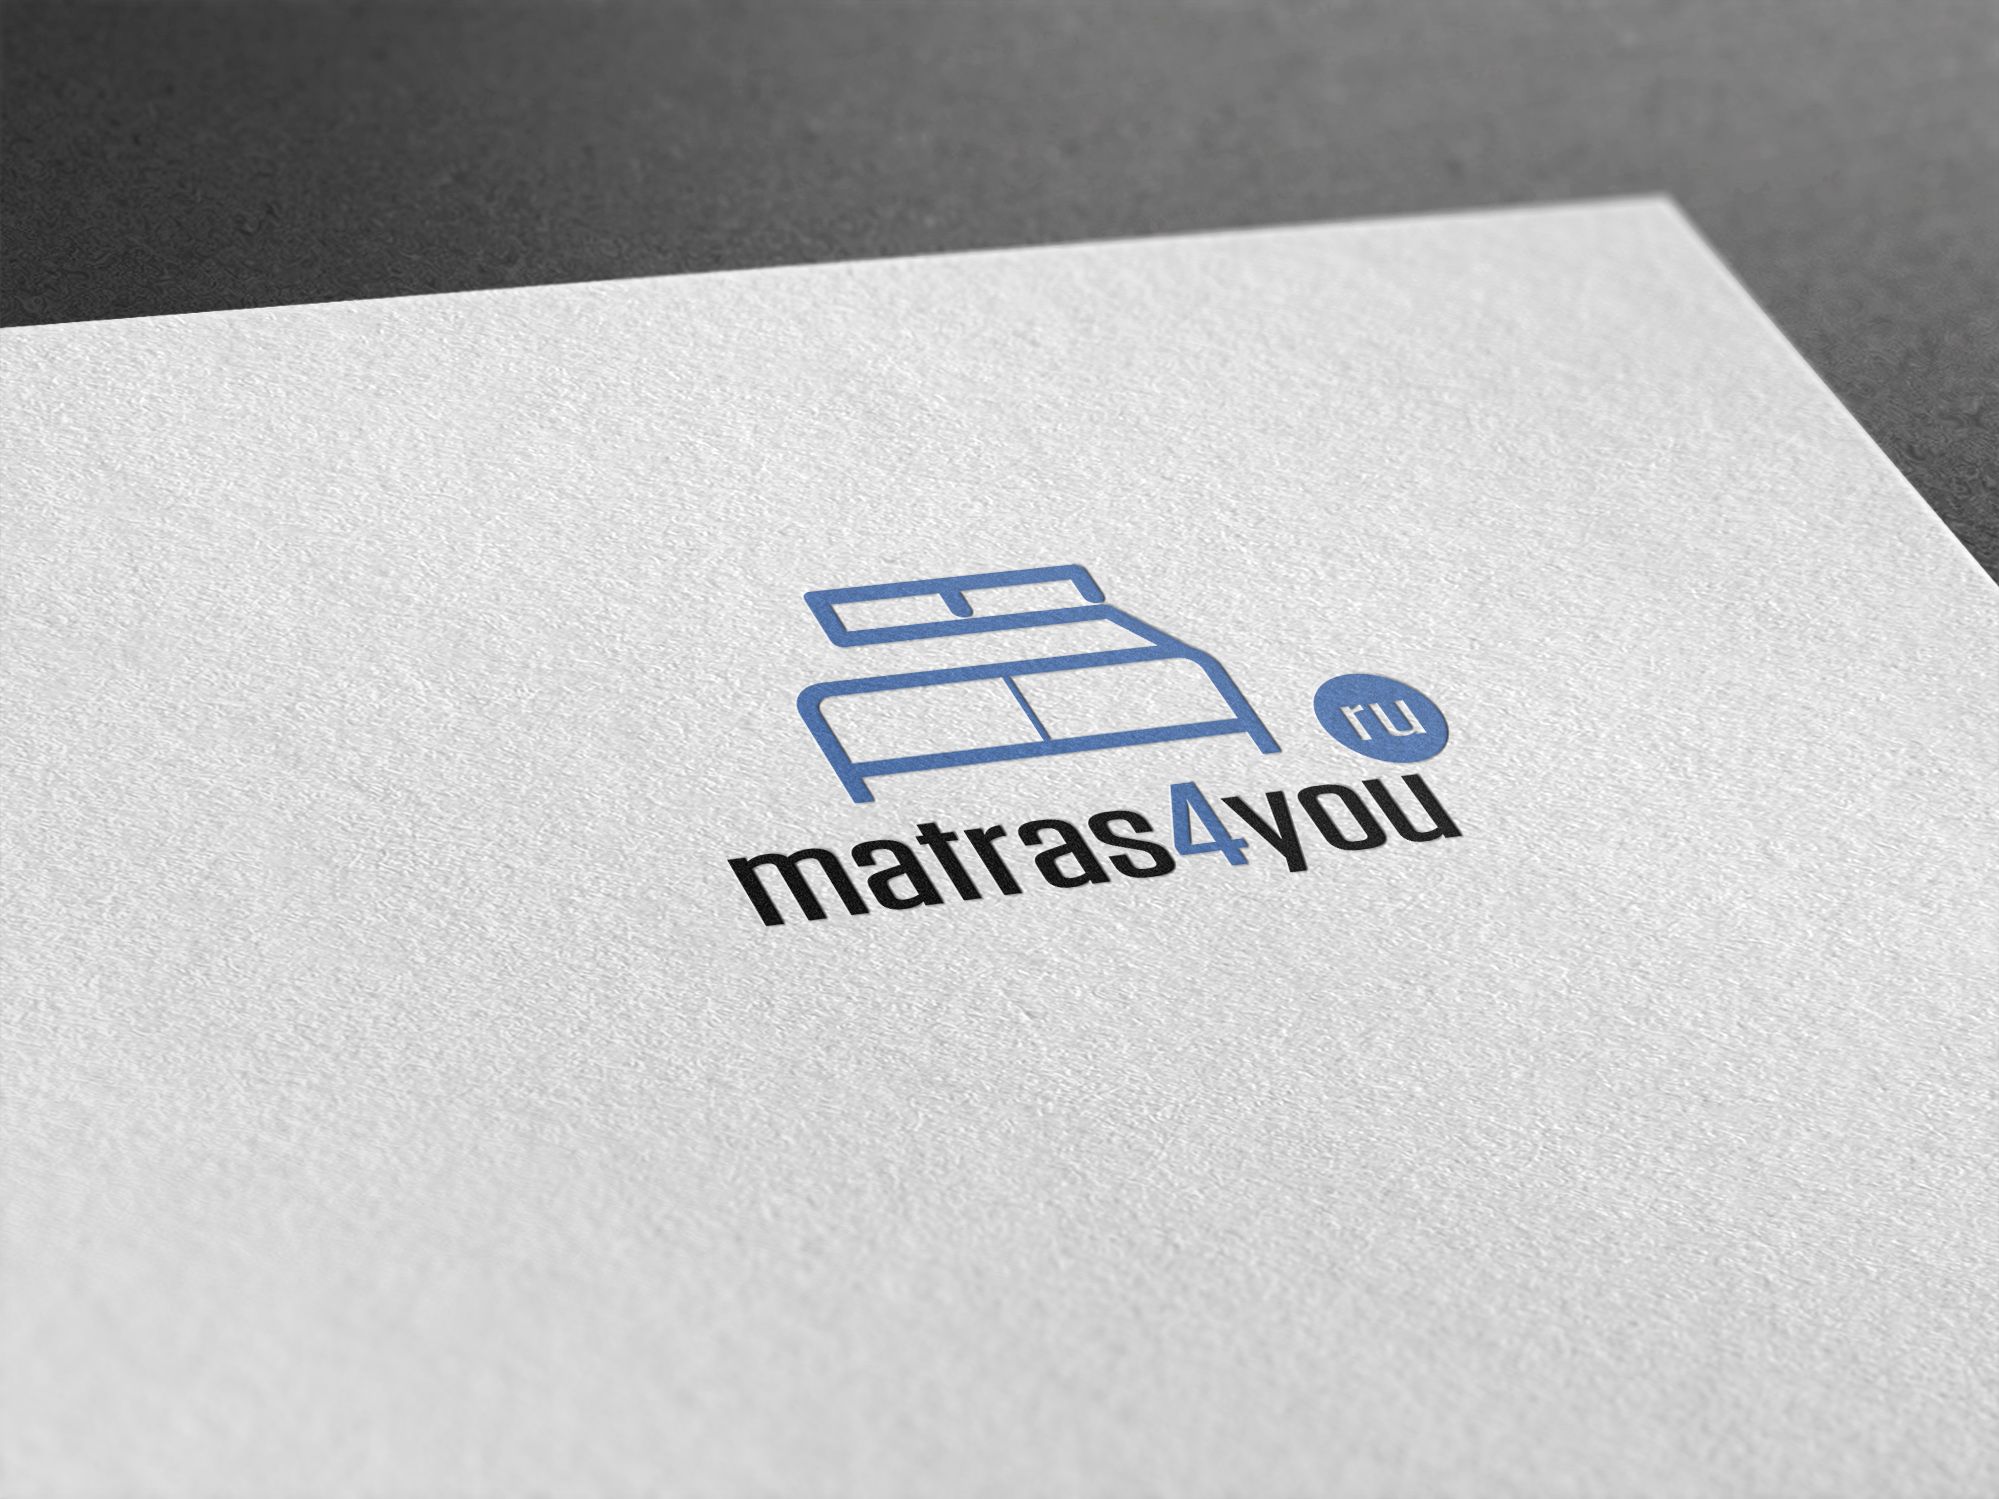 matras4u - дизайнер U4po4mak